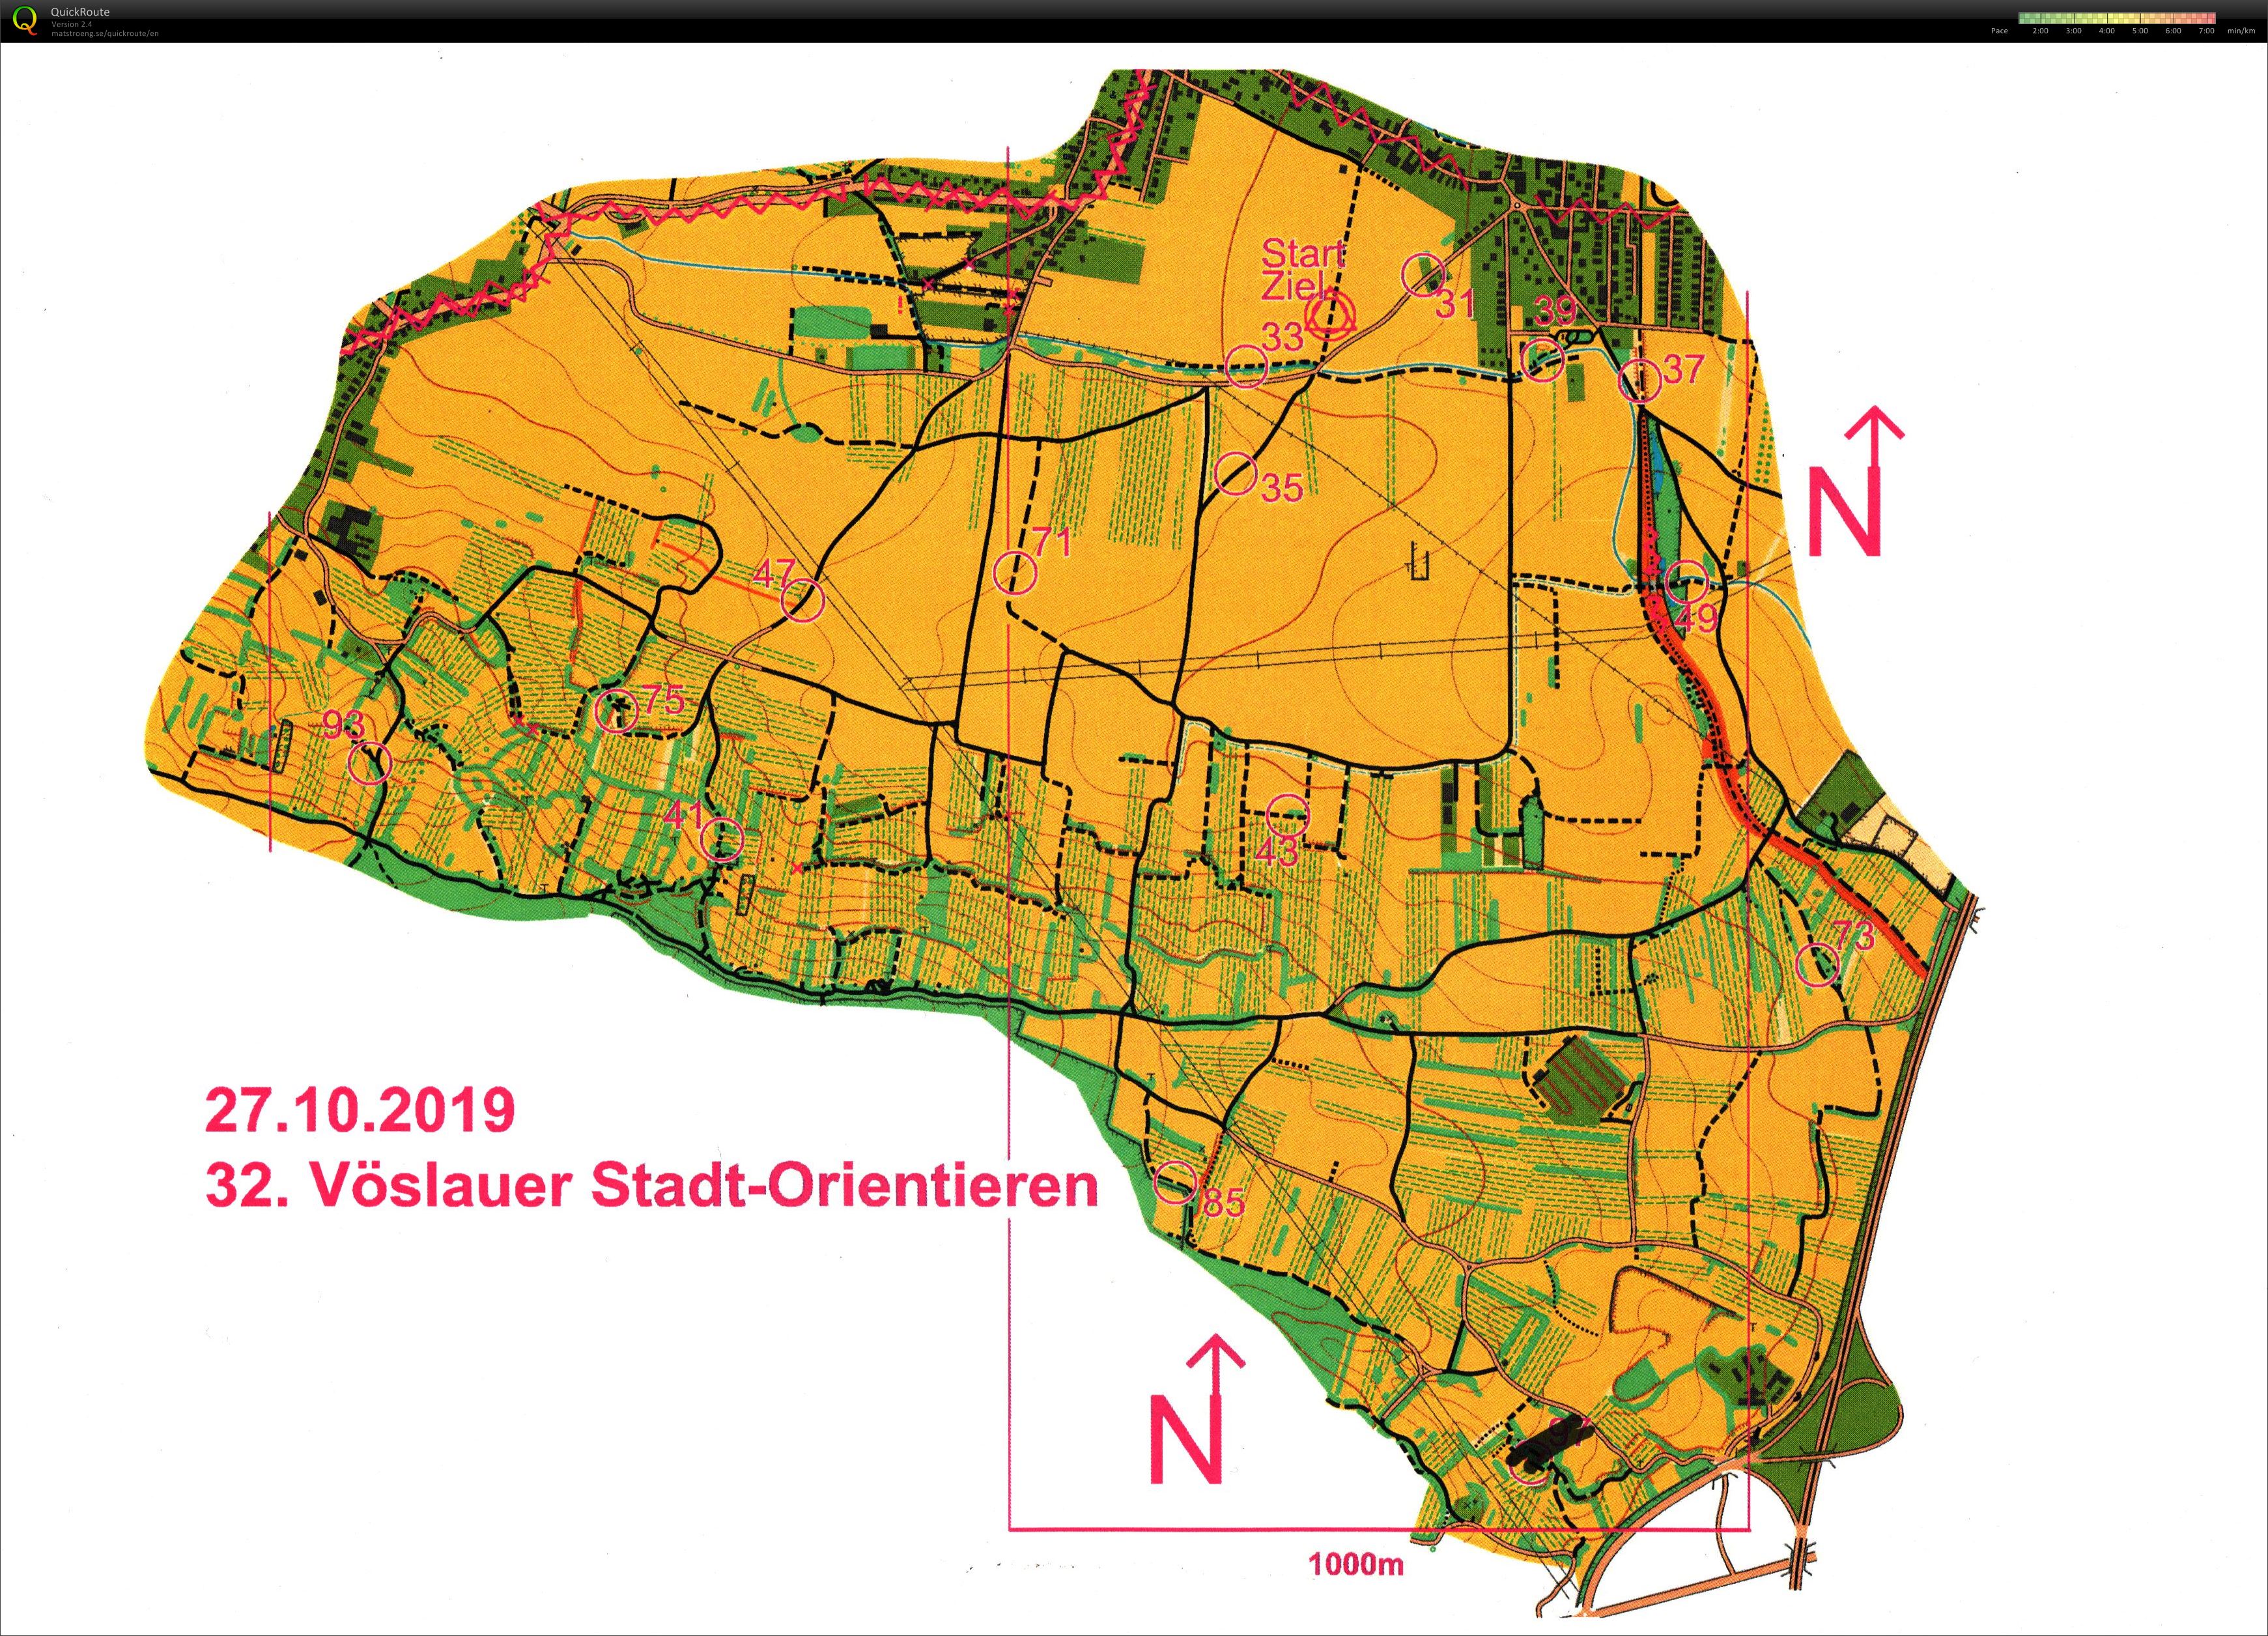 Vöslauer Stadt-Orientieren (2019-10-27)